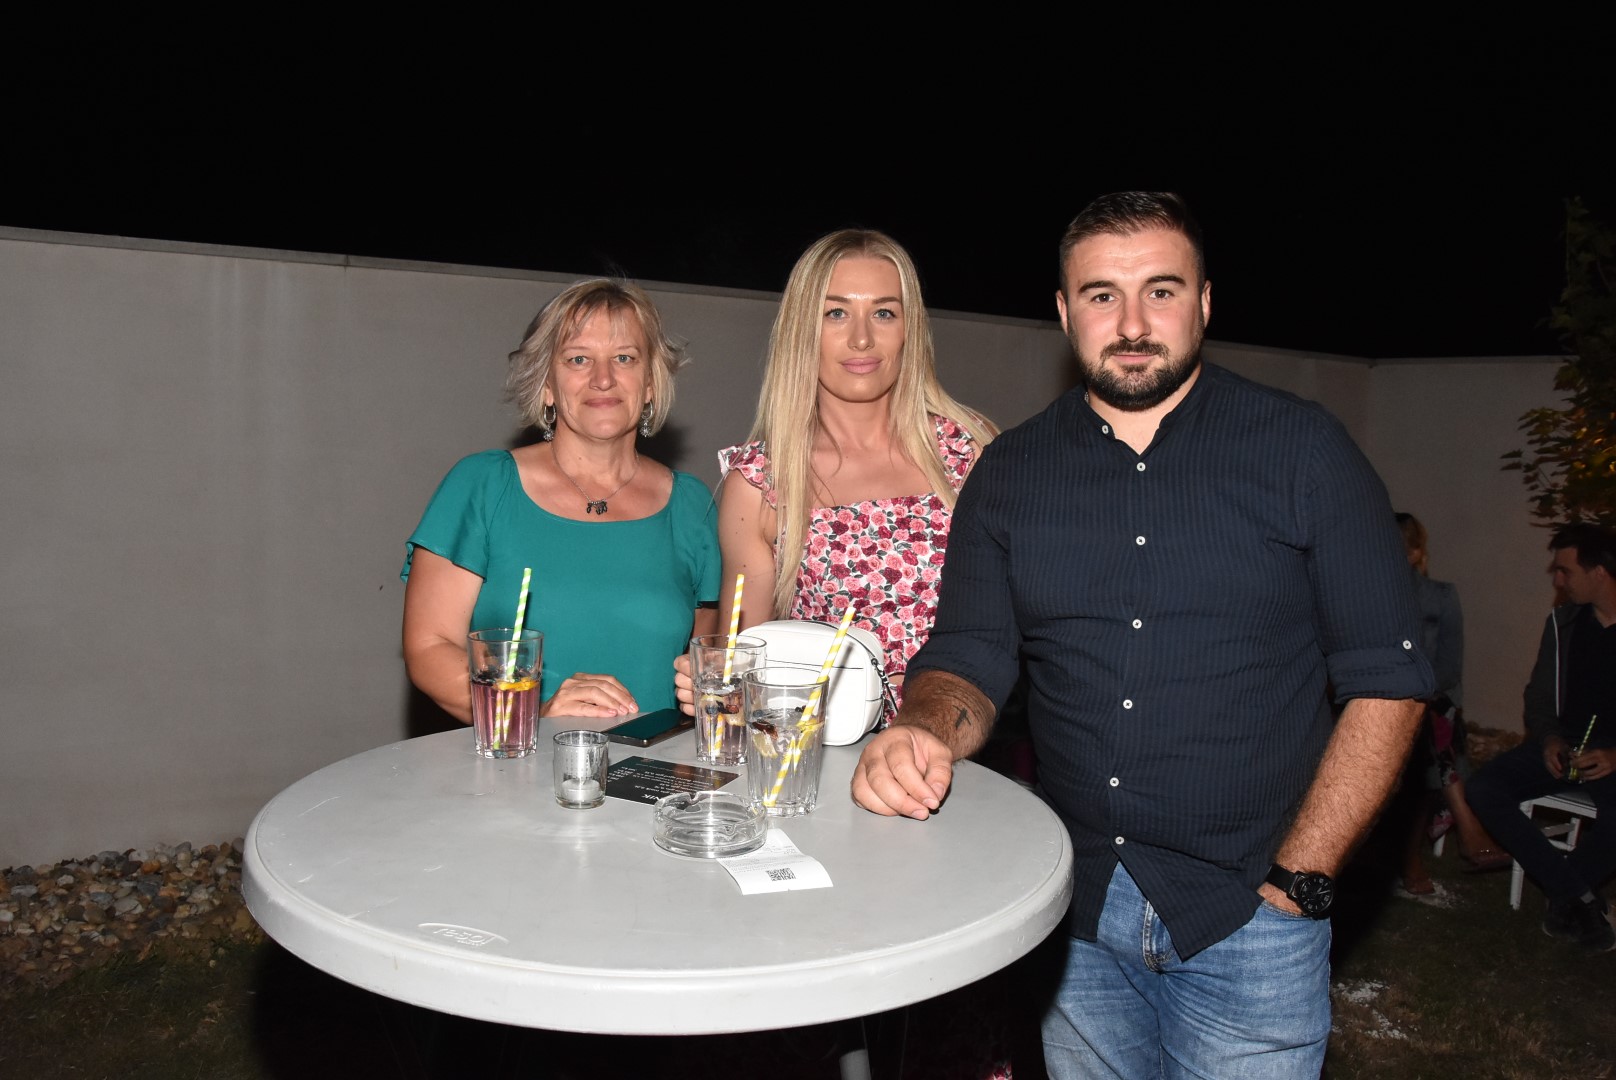 Požega.eu | Održan Gin&tonic pool party u živopisnom okruženju restorana Schön blick u Vetovu /FOTOGALERIJA/